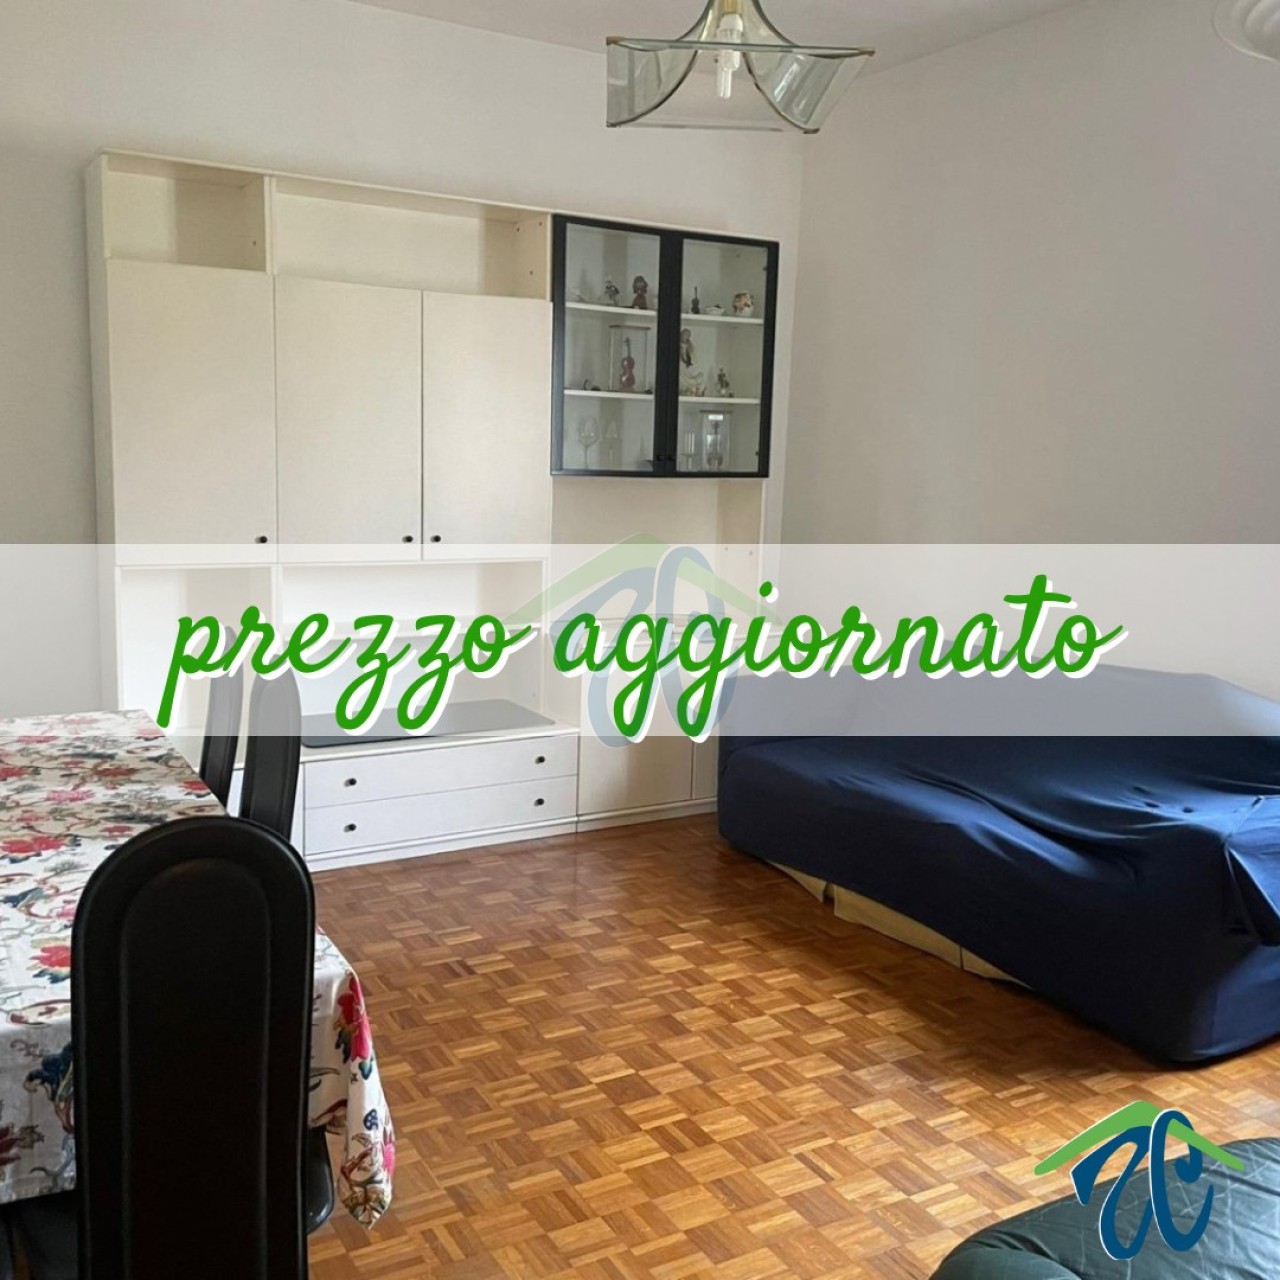 Appartamento in vendita a Piacenza, 3 locali, prezzo € 105.000 | PortaleAgenzieImmobiliari.it